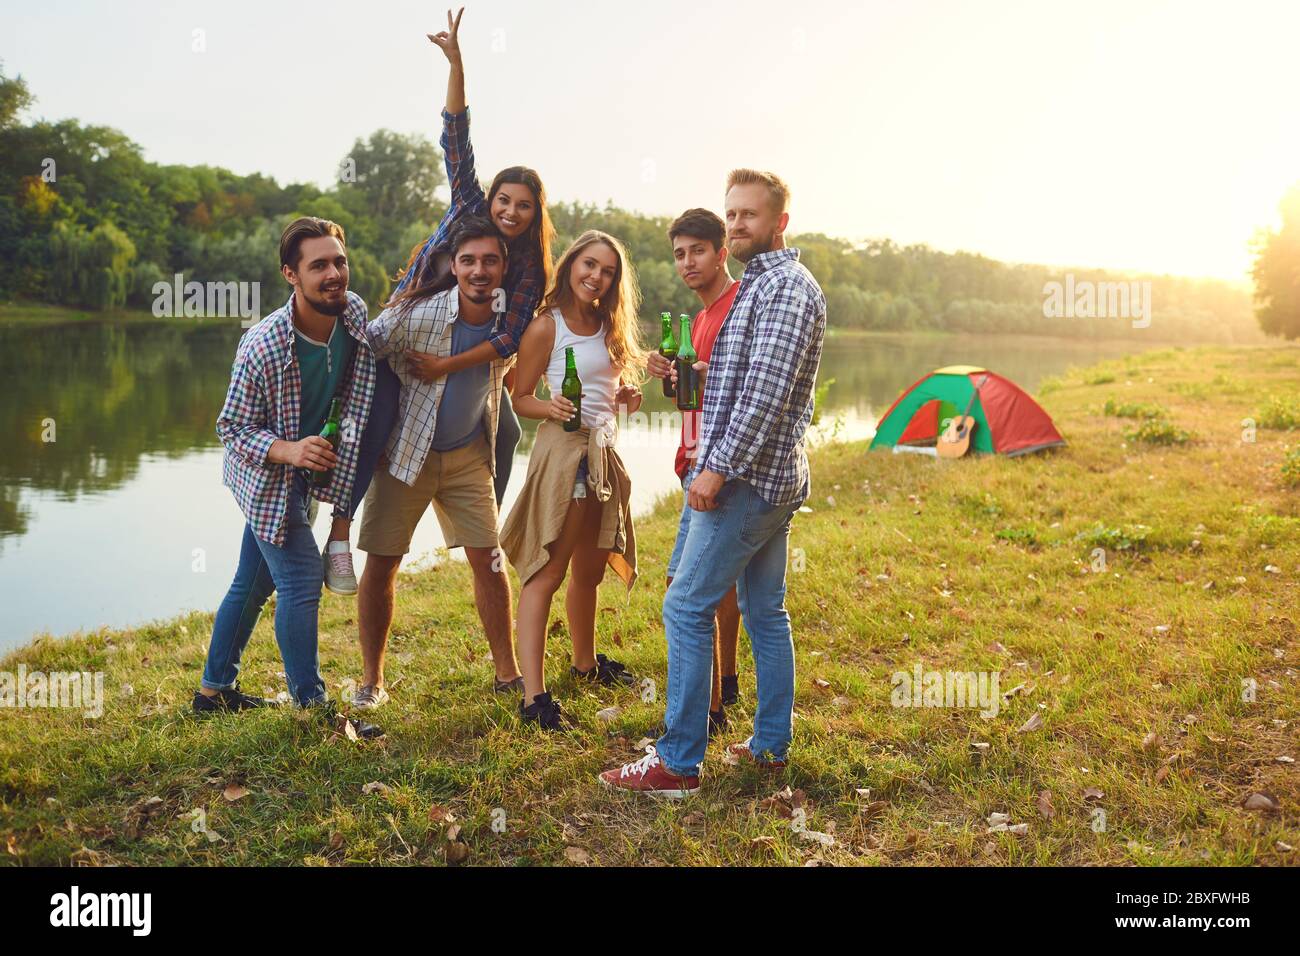 Gruppe von Menschen Lächeln, stehend auf einem Picknick Stockfoto